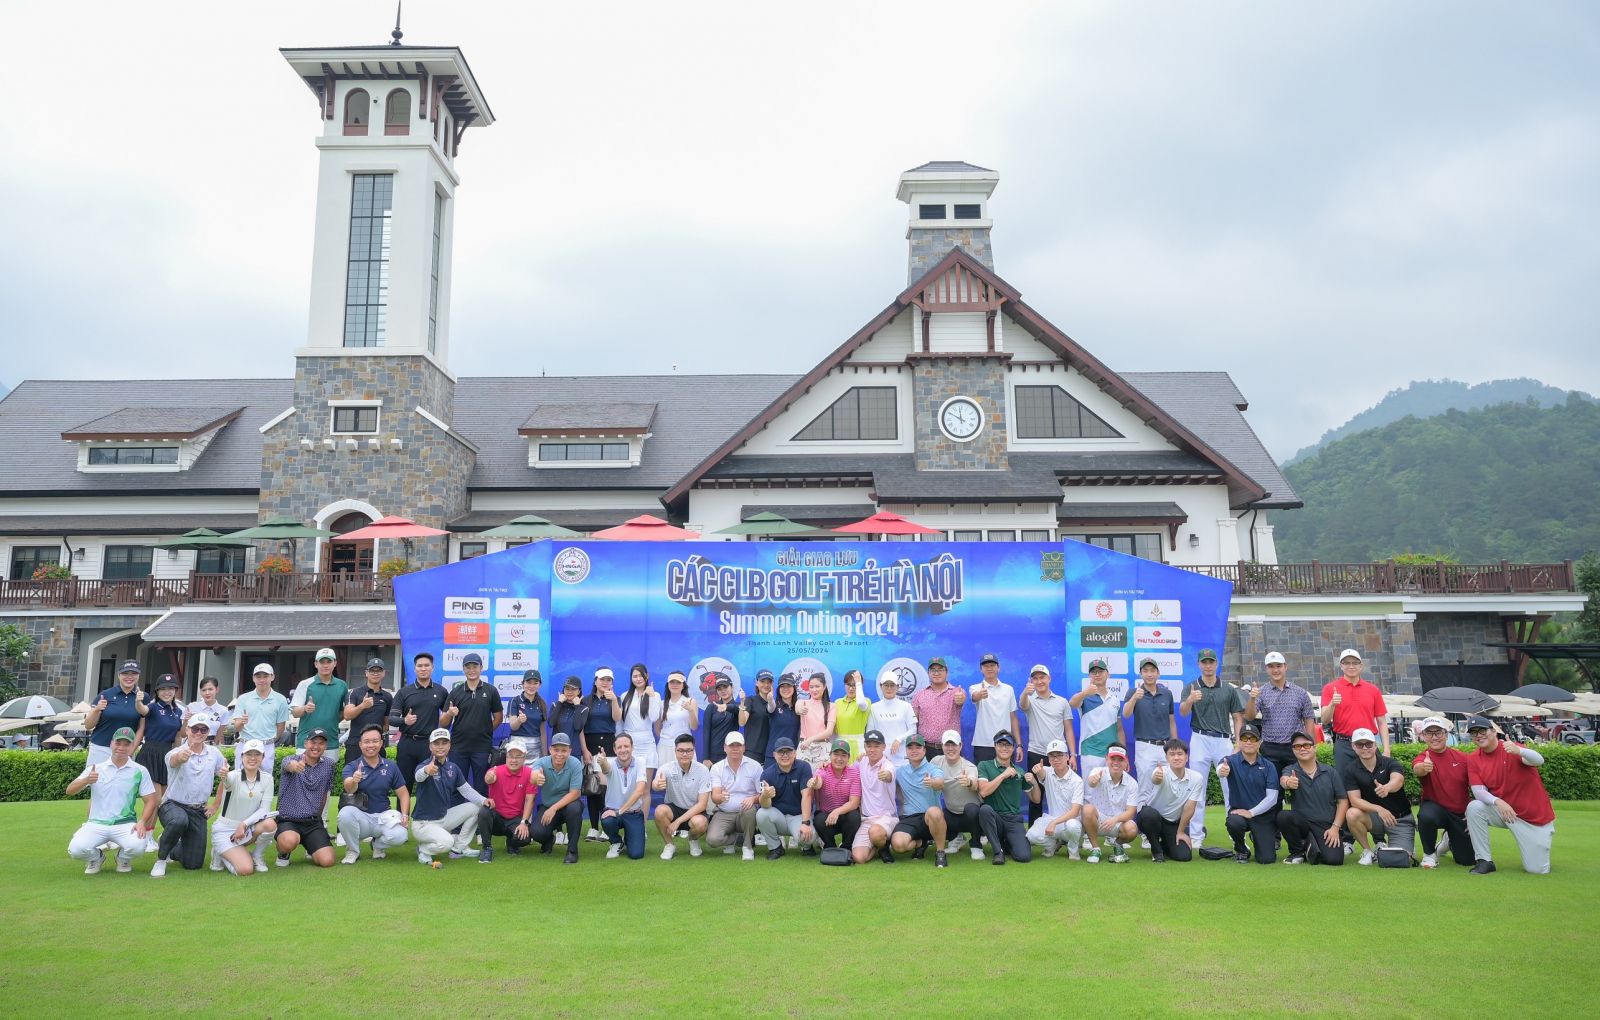 CLB Golf RMIT Vô Địch Giải Các CLB Golf Trẻ Hà Nội 2024